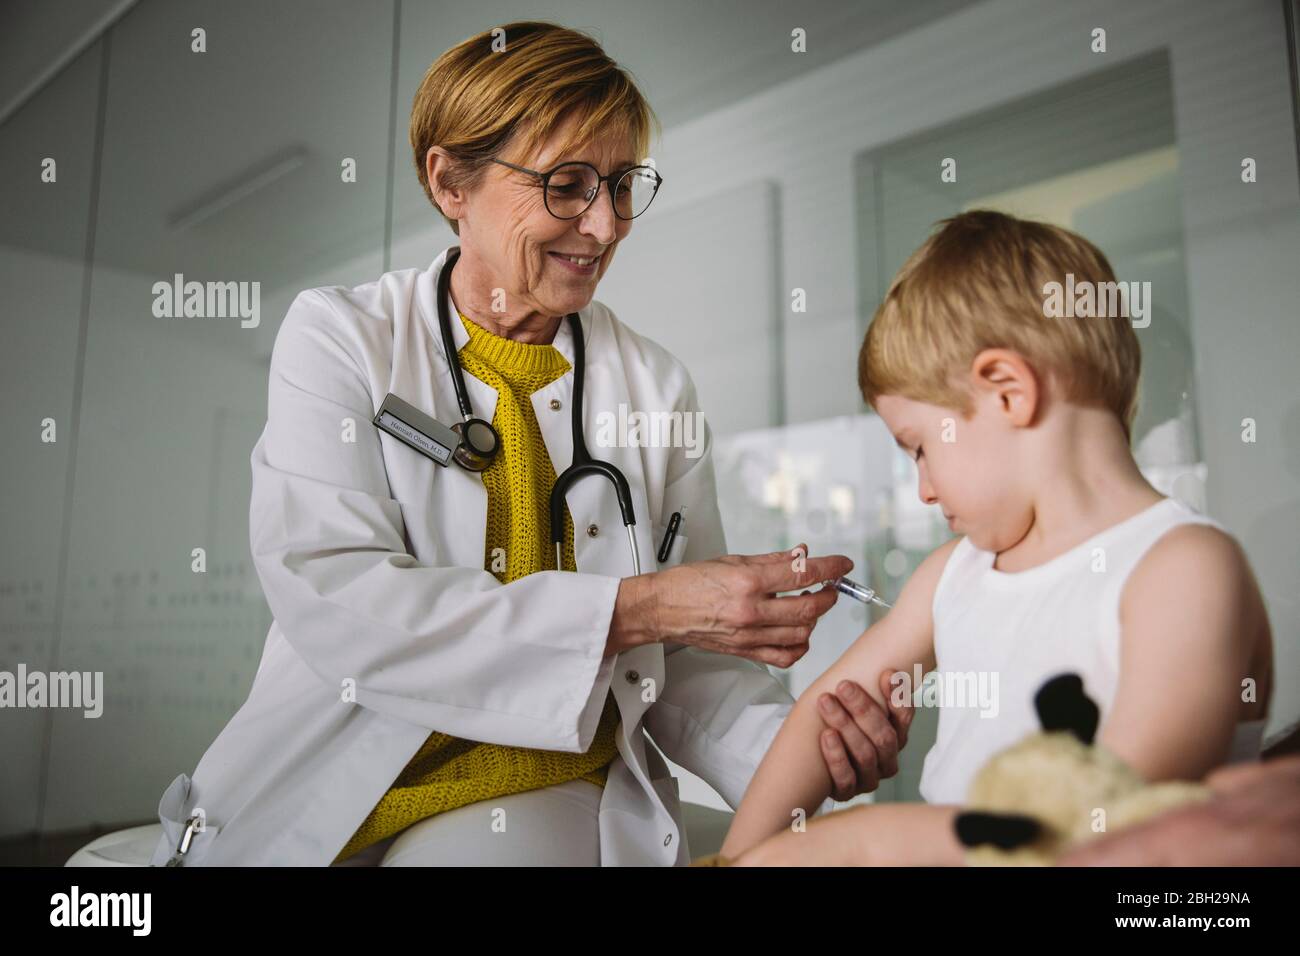 Kinderarzt injiziert Impfstoff in den Arm des Kleinkindes Stockfoto